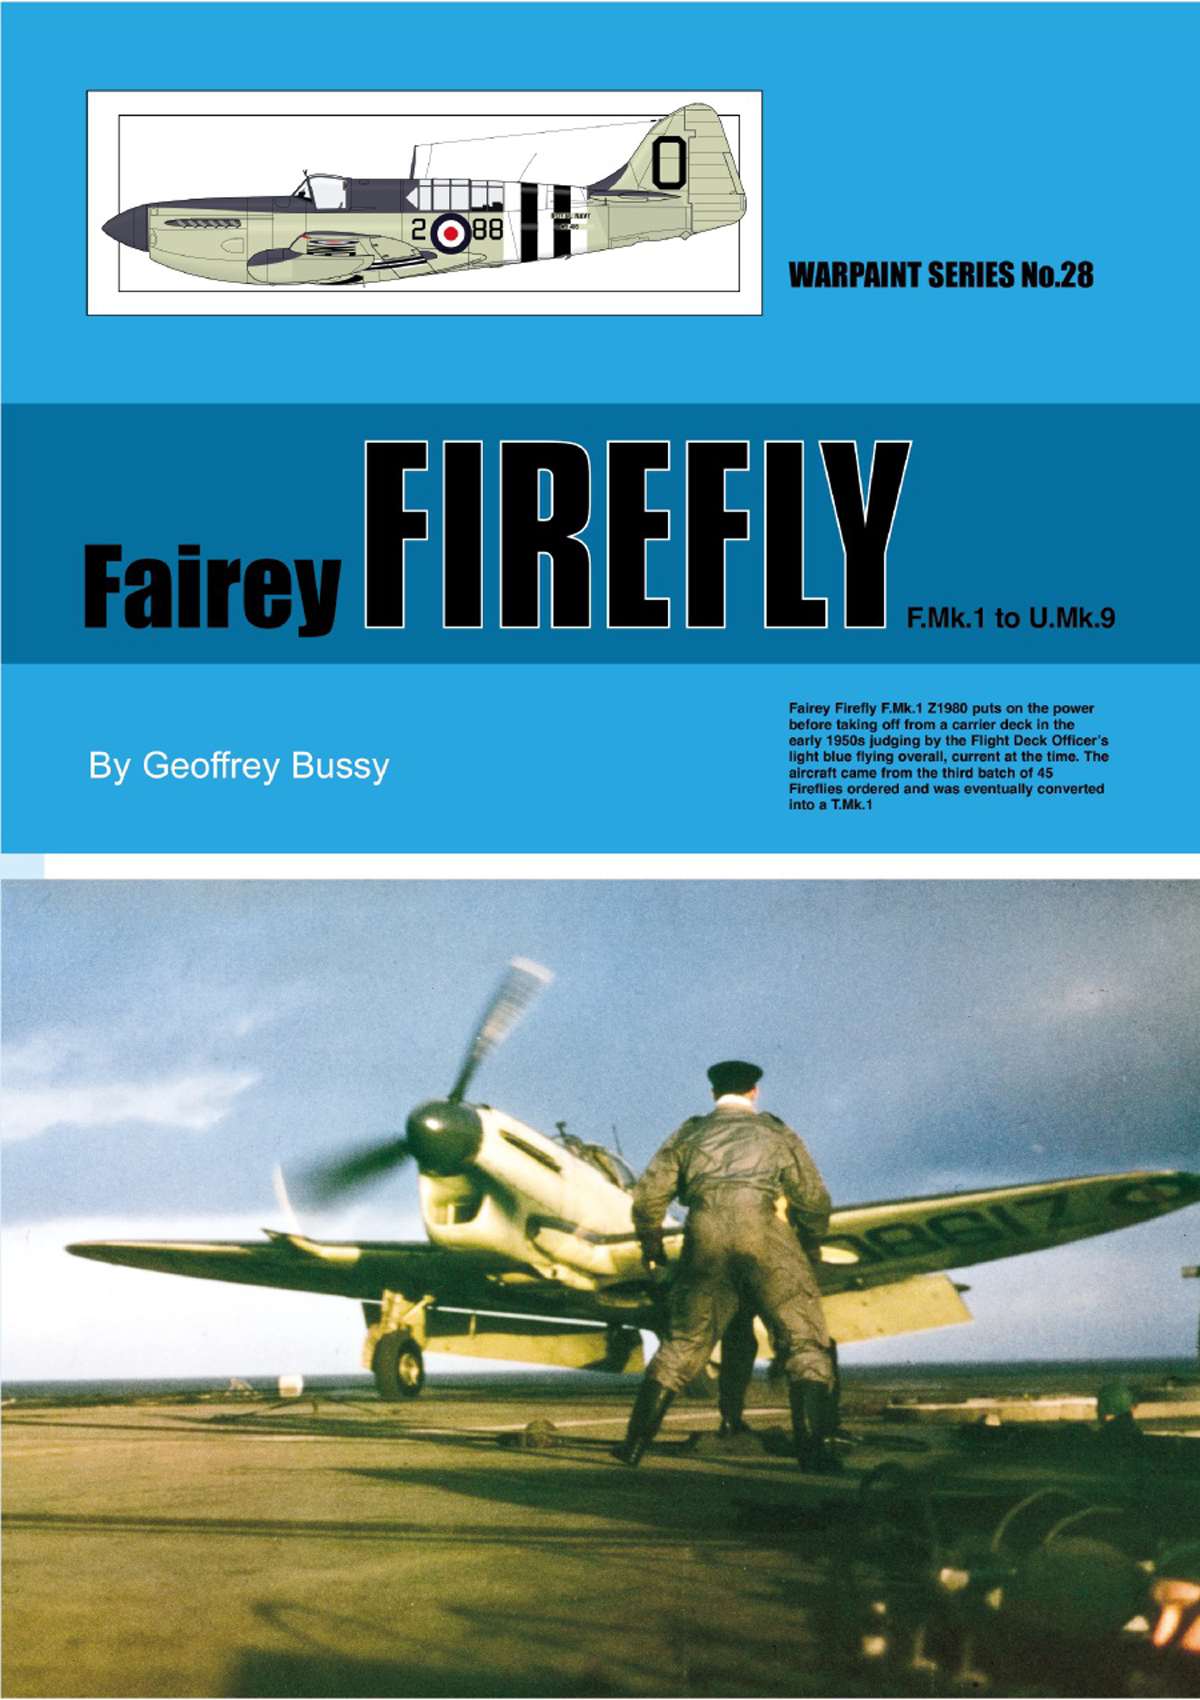 N28 - Fairey Firefly